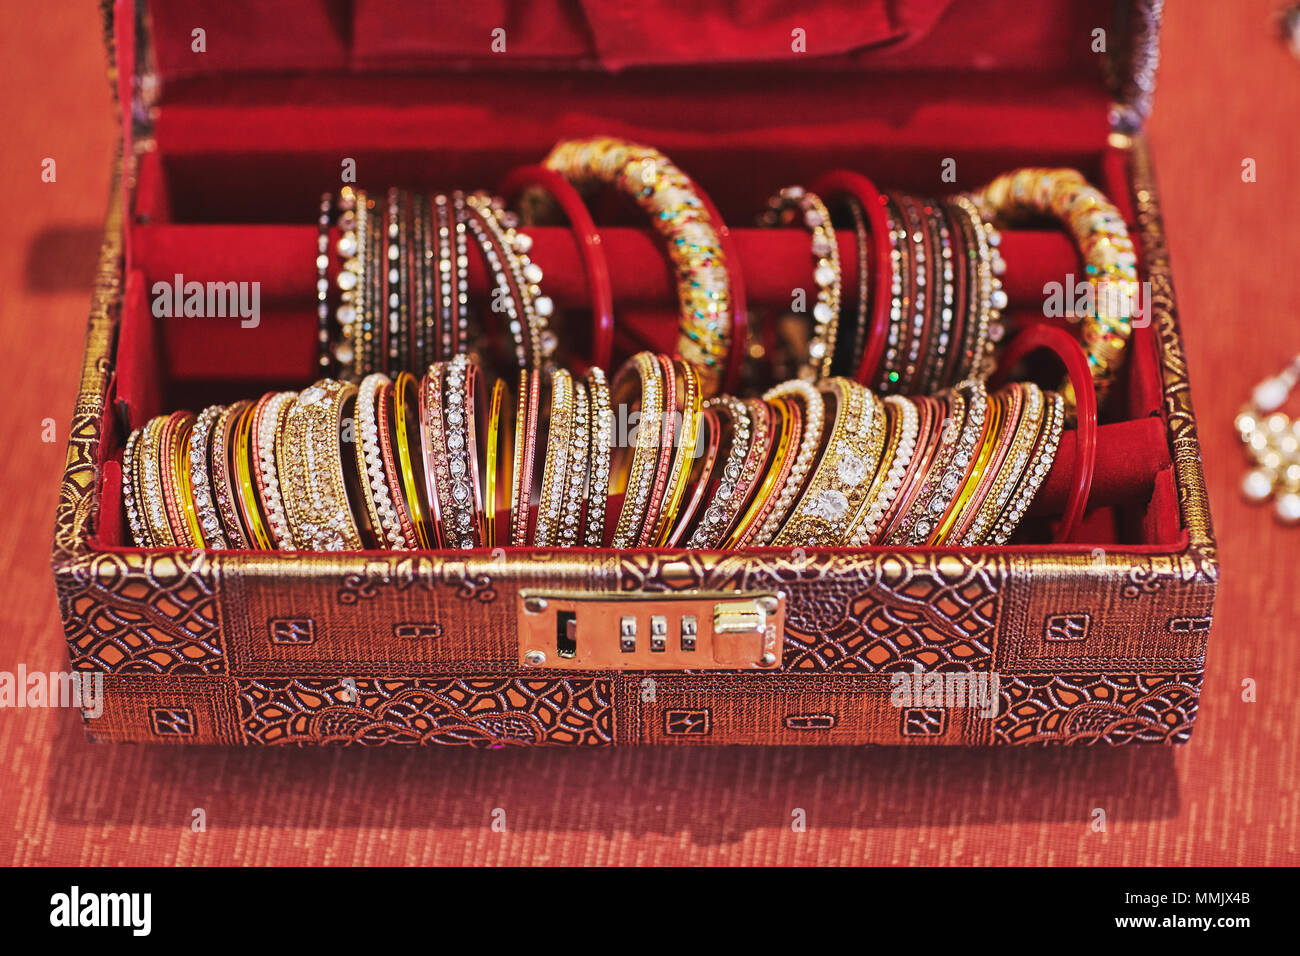 Une collection de paillettes et brillants ou bracelets bangle dans diverses jewely décoration dans le luxe case rouge pour mariée indienne Banque D'Images